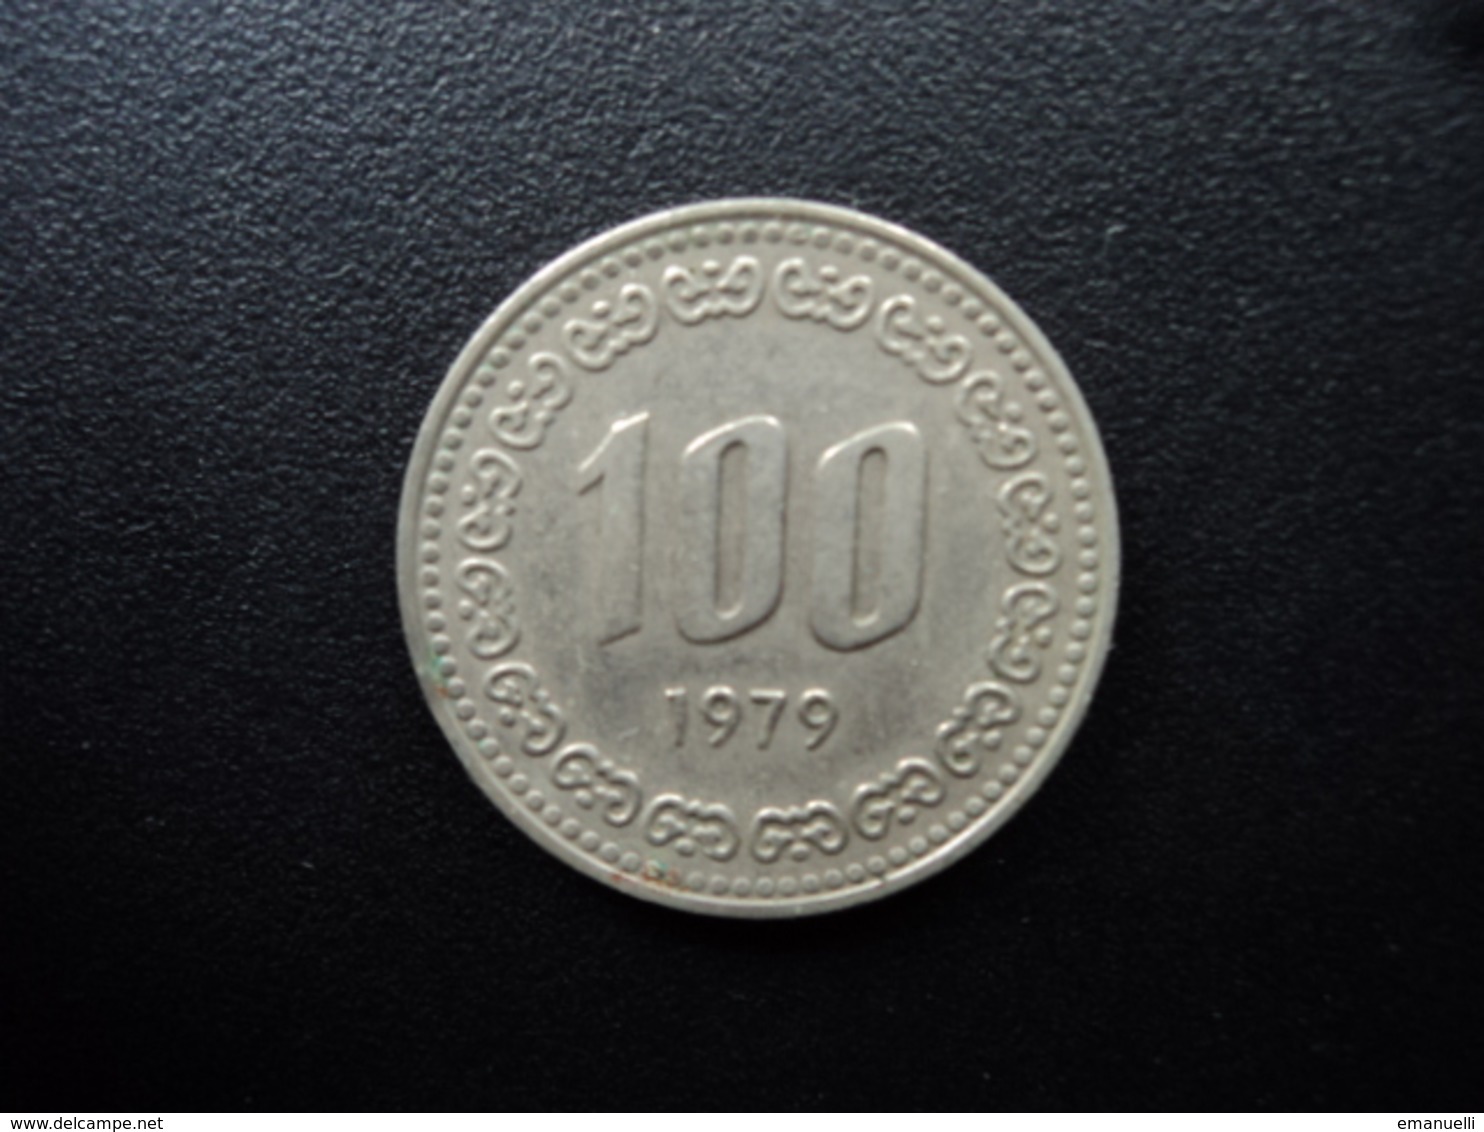 CORÉE DU SUD : 100 WON   1979   KM 9    SUP - Corée Du Sud